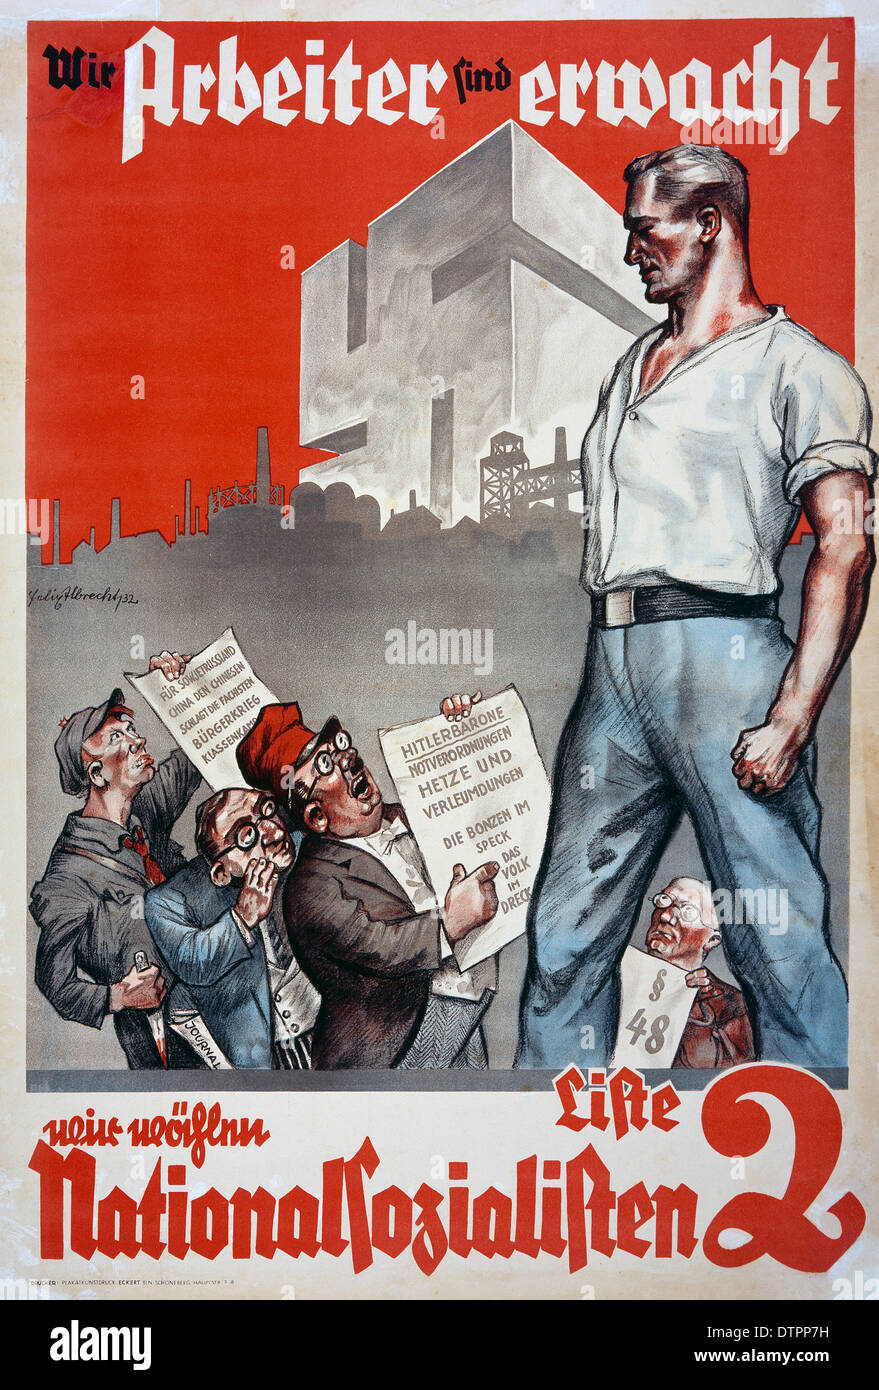 1932 nationalsozialistisches deutsches Wahlplakat mit einem deutschen Mann, der mit einem weißen Knopfs bekleidet ist, der über Menschen, die vermutlich jüdische Männer sind, thront. Das Plakat lautet: "Wir Arbeiter Sind Erwacht. Wir Wählen Nationalsozialist." Stockfoto